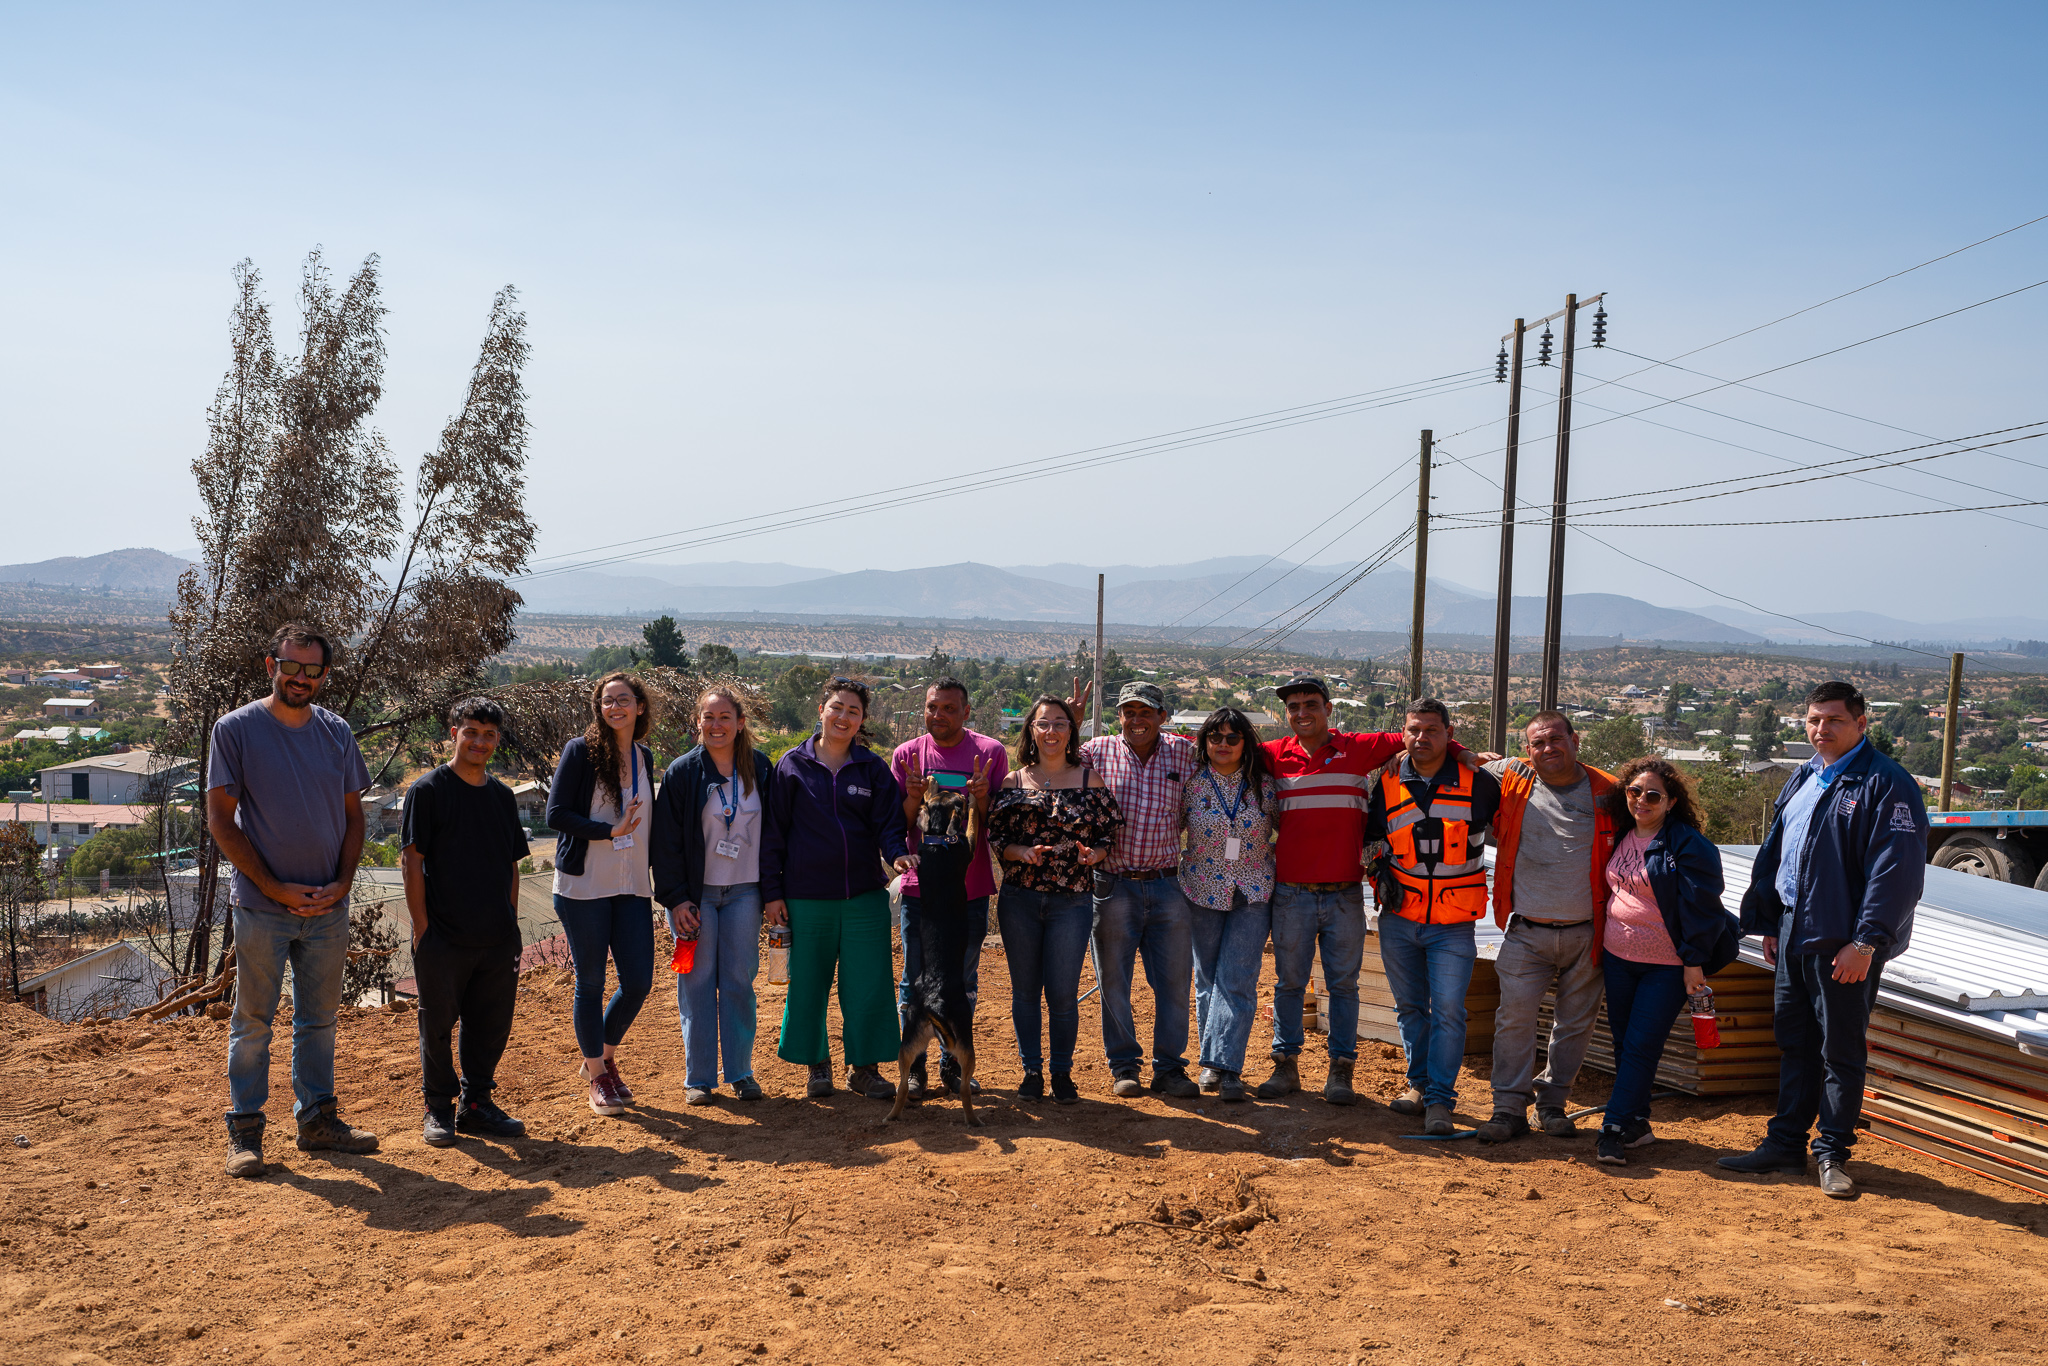  Melipilla: Bono de Recuperación para familias damnificadas por incendio y entrega de primeras viviendas de emergencia